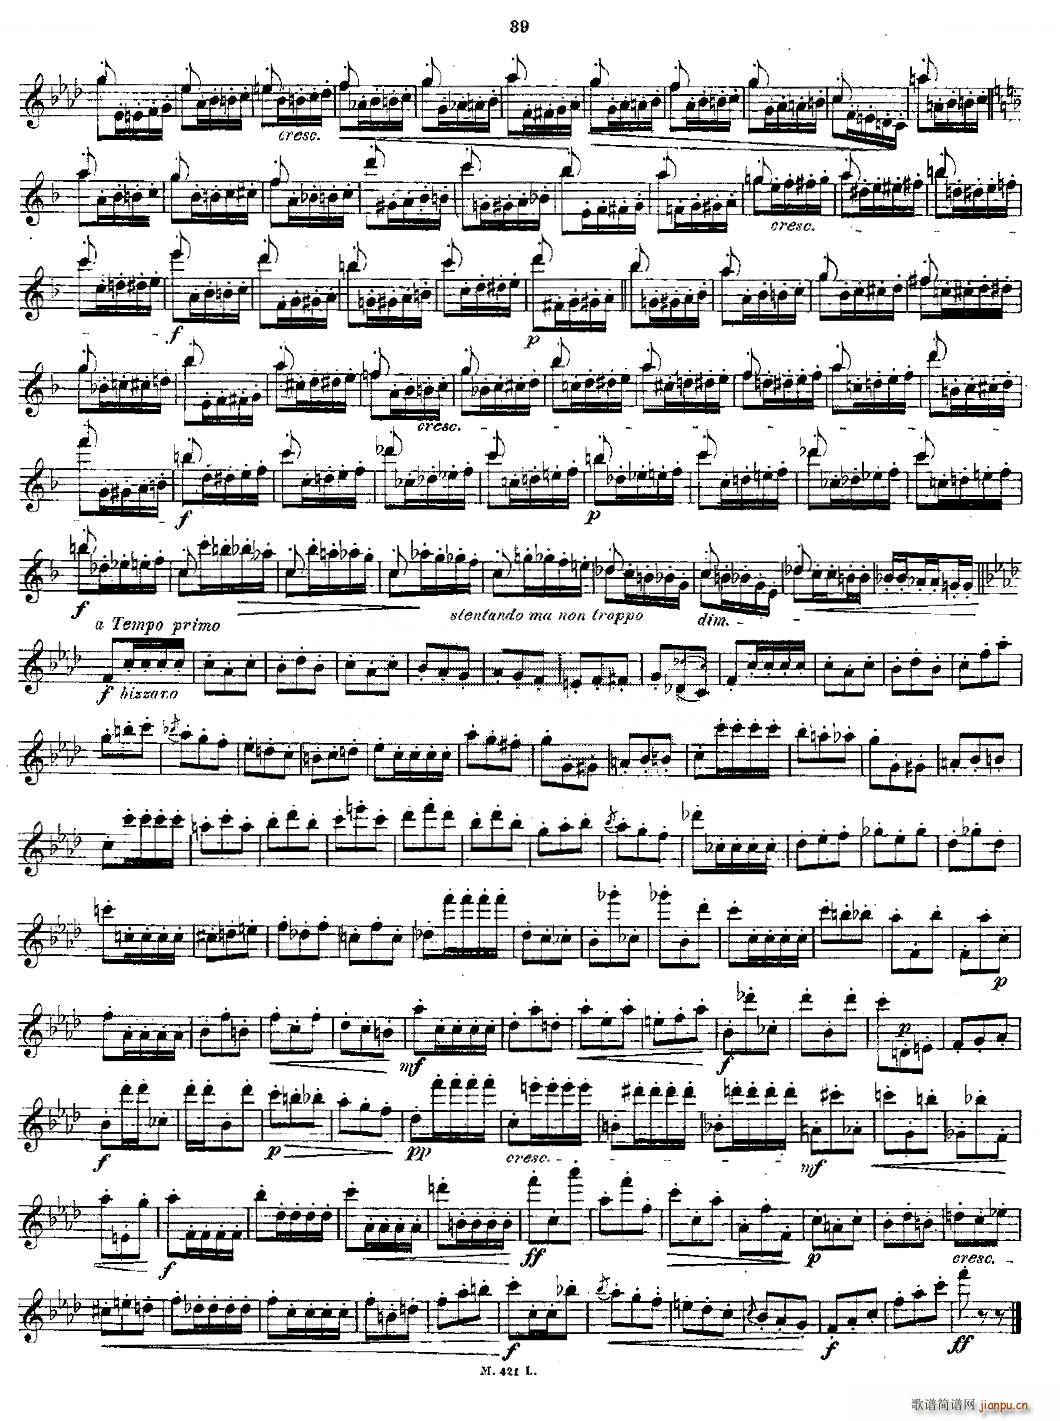 24首长笛练习曲 Op 15 之16 20 铜管(笛箫谱)7